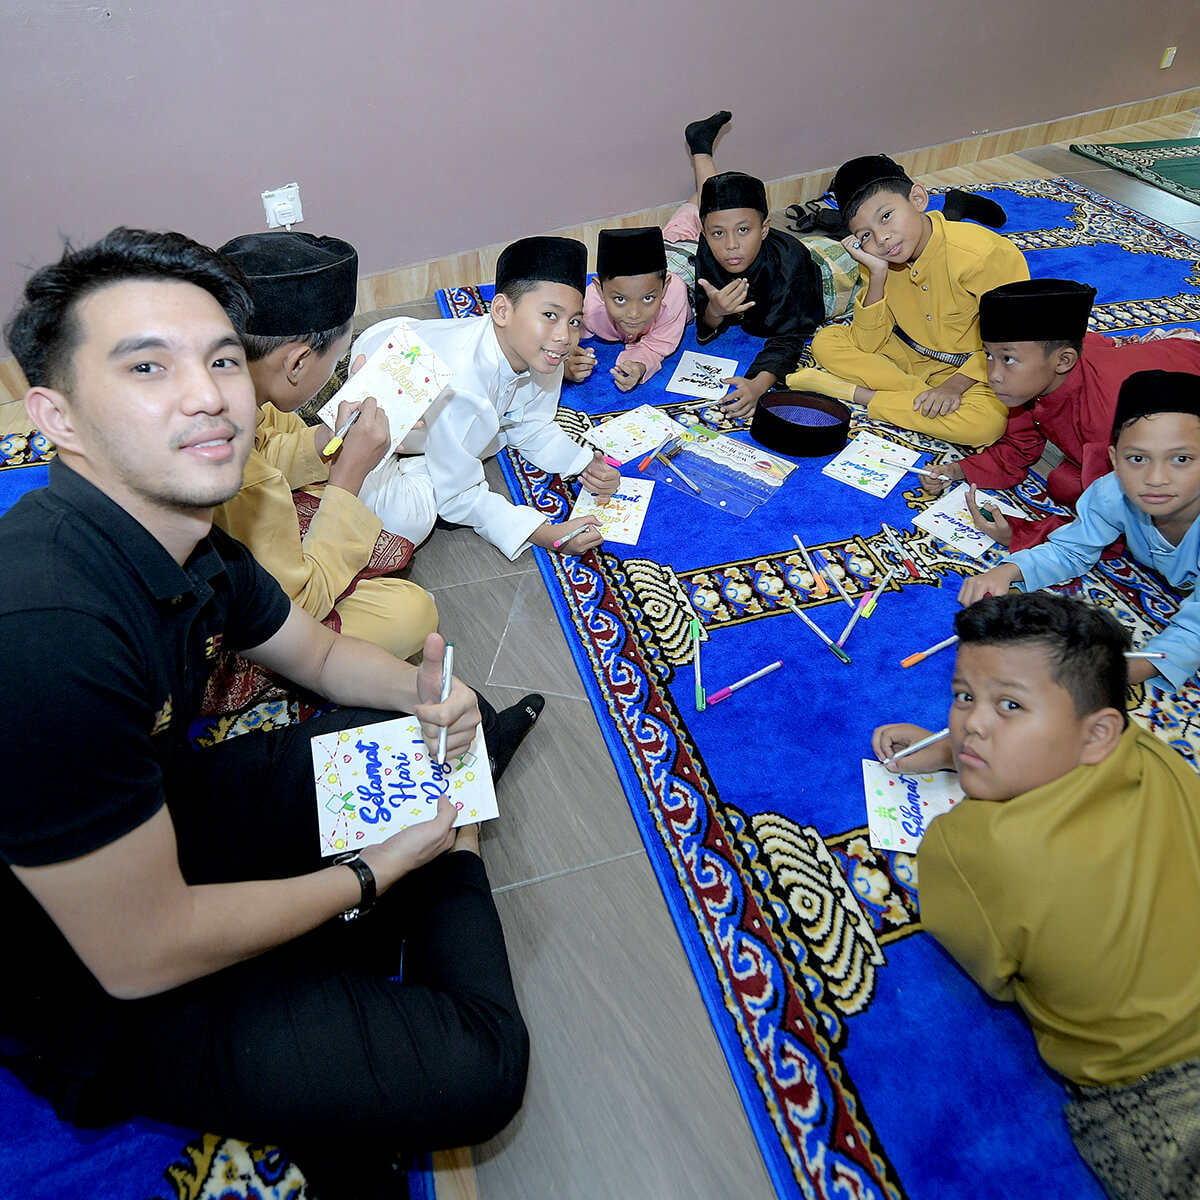 Syahmi Irfan reading alongside children